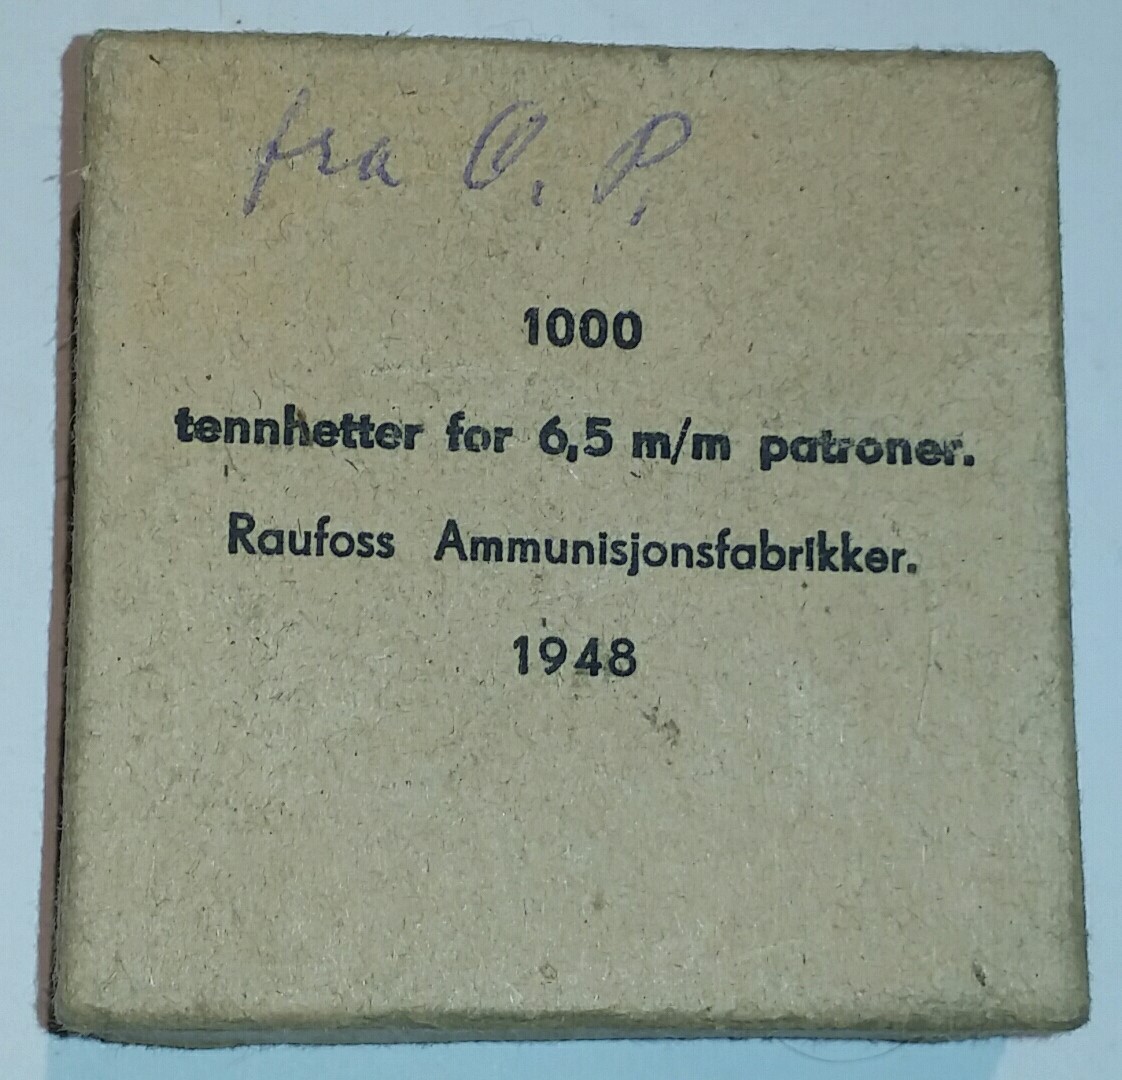 ./ammo/ladekomponenter/bilder/Ladekomponent-Tennhetter-Raufoss-1000eske-1948-1.jpg